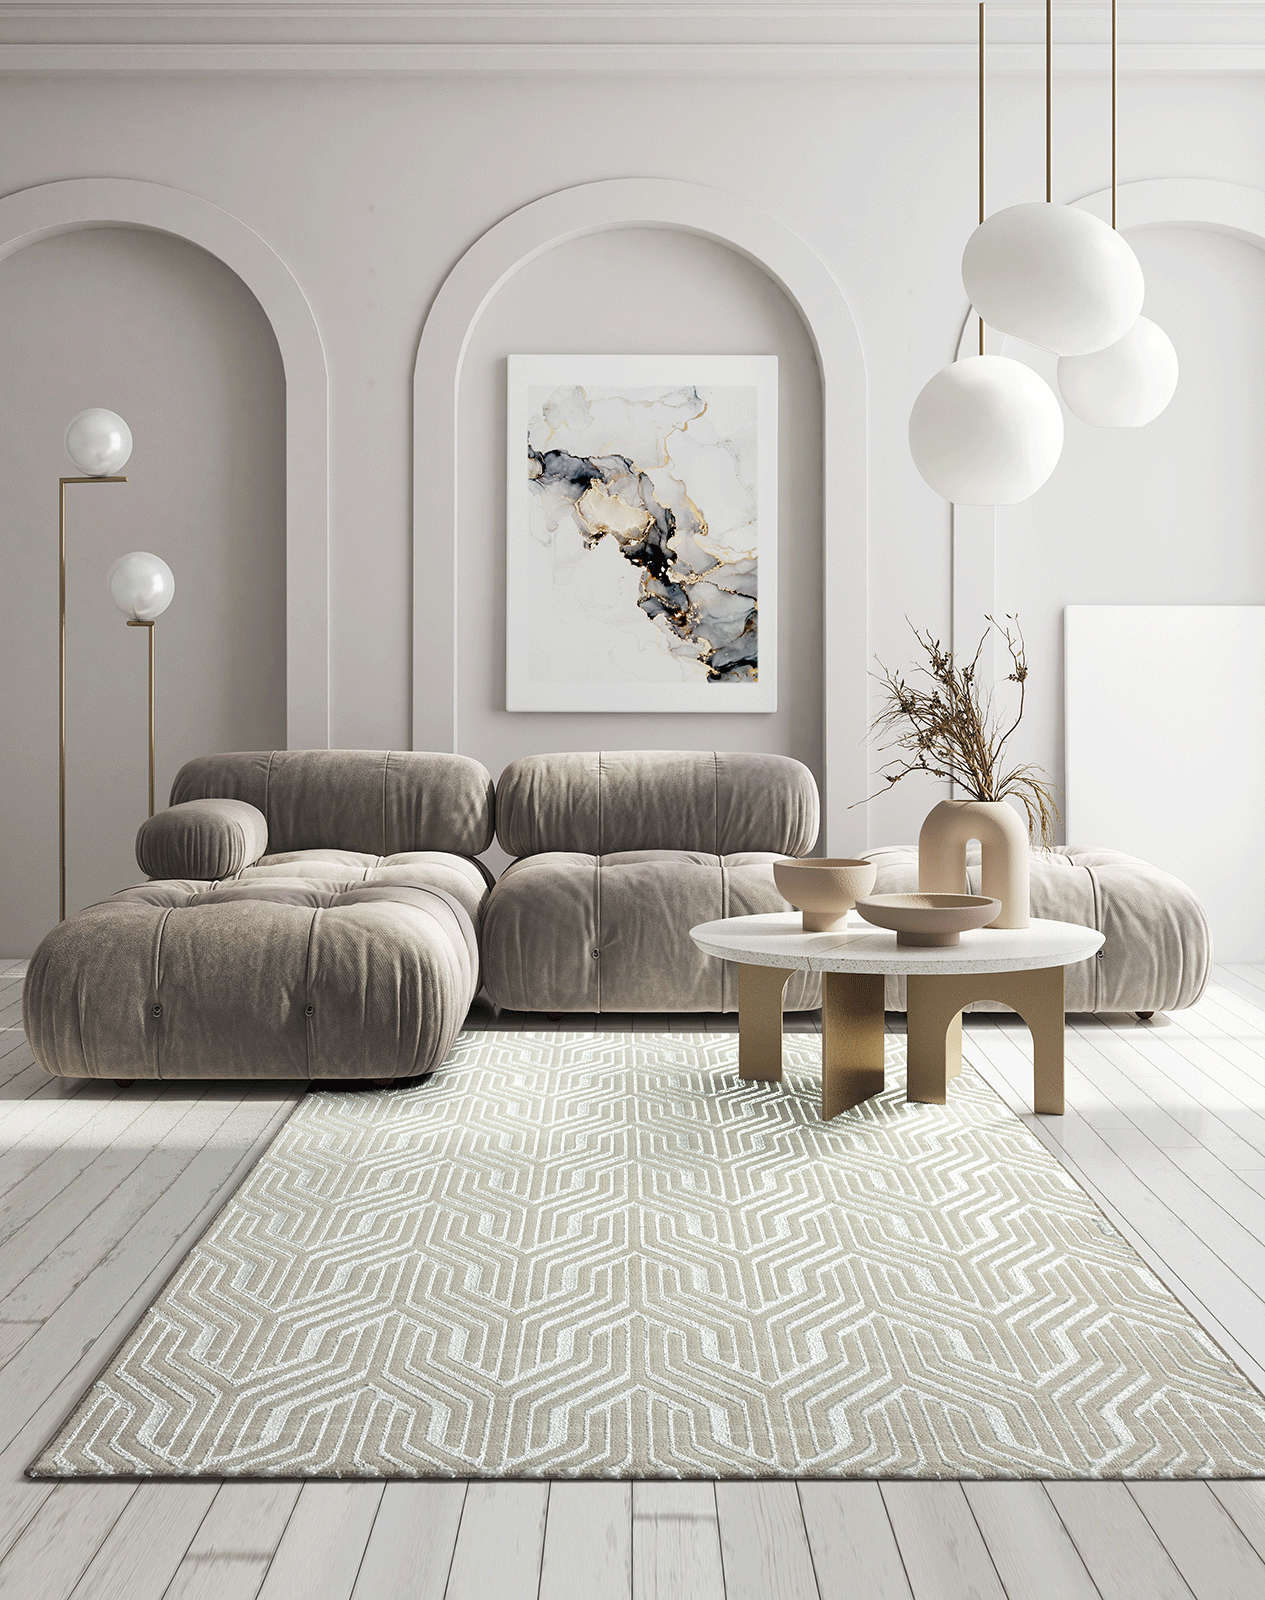             Zachtpolig tapijt in crème - 290 x 200 cm
        